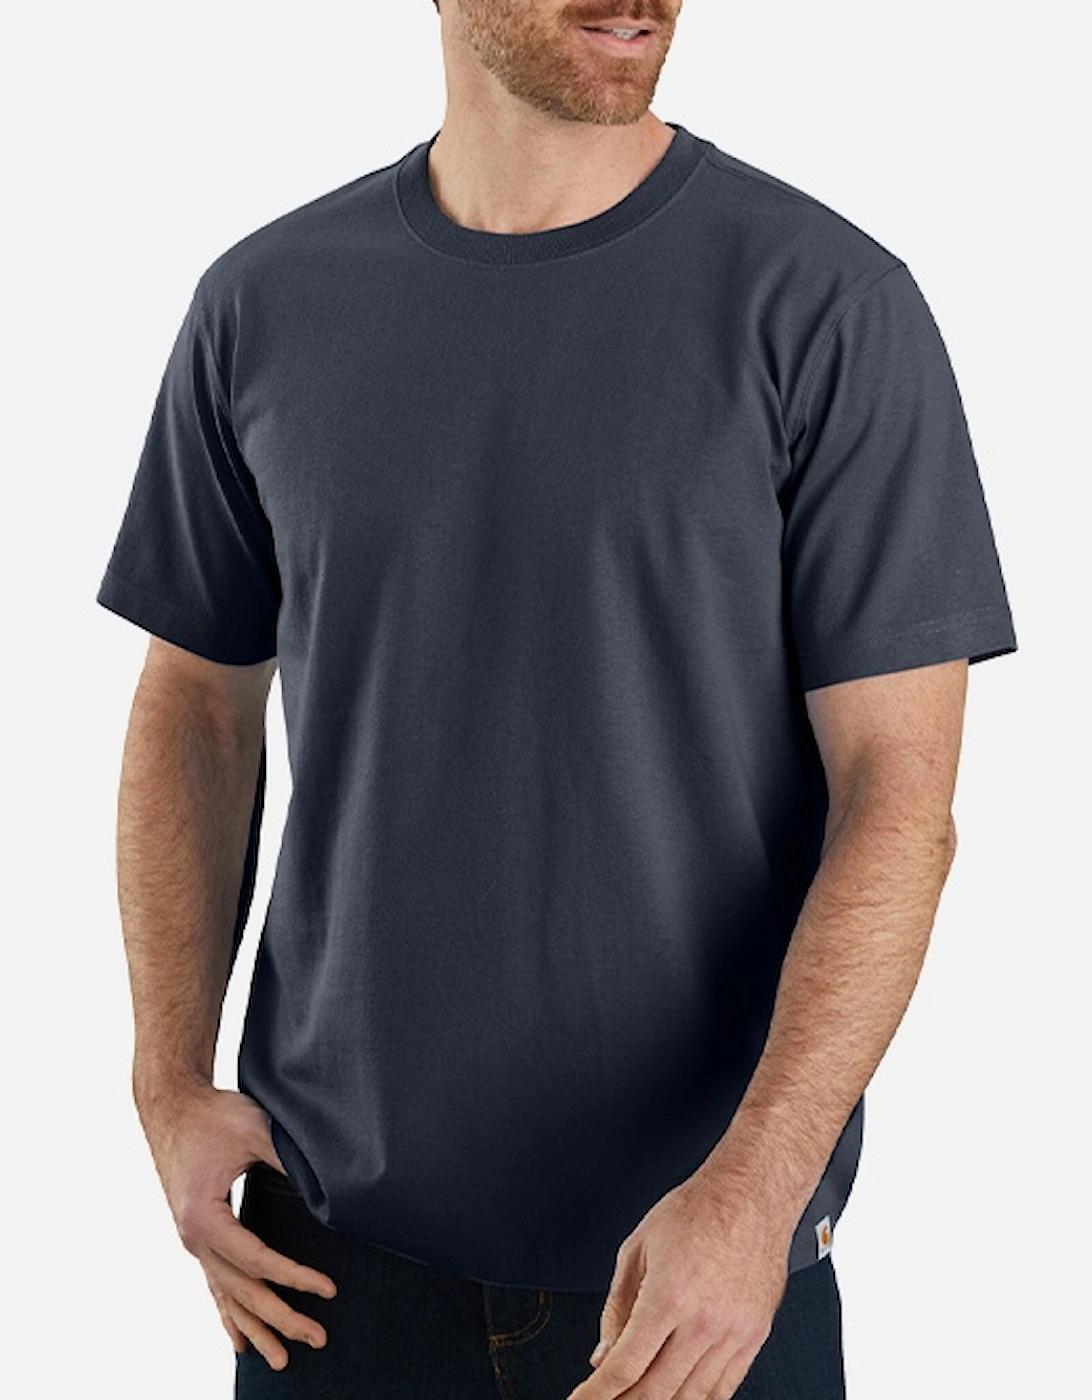 Carhartt Relaxed Fit Heavyweight Short-Sleeve T-Shirt Navy